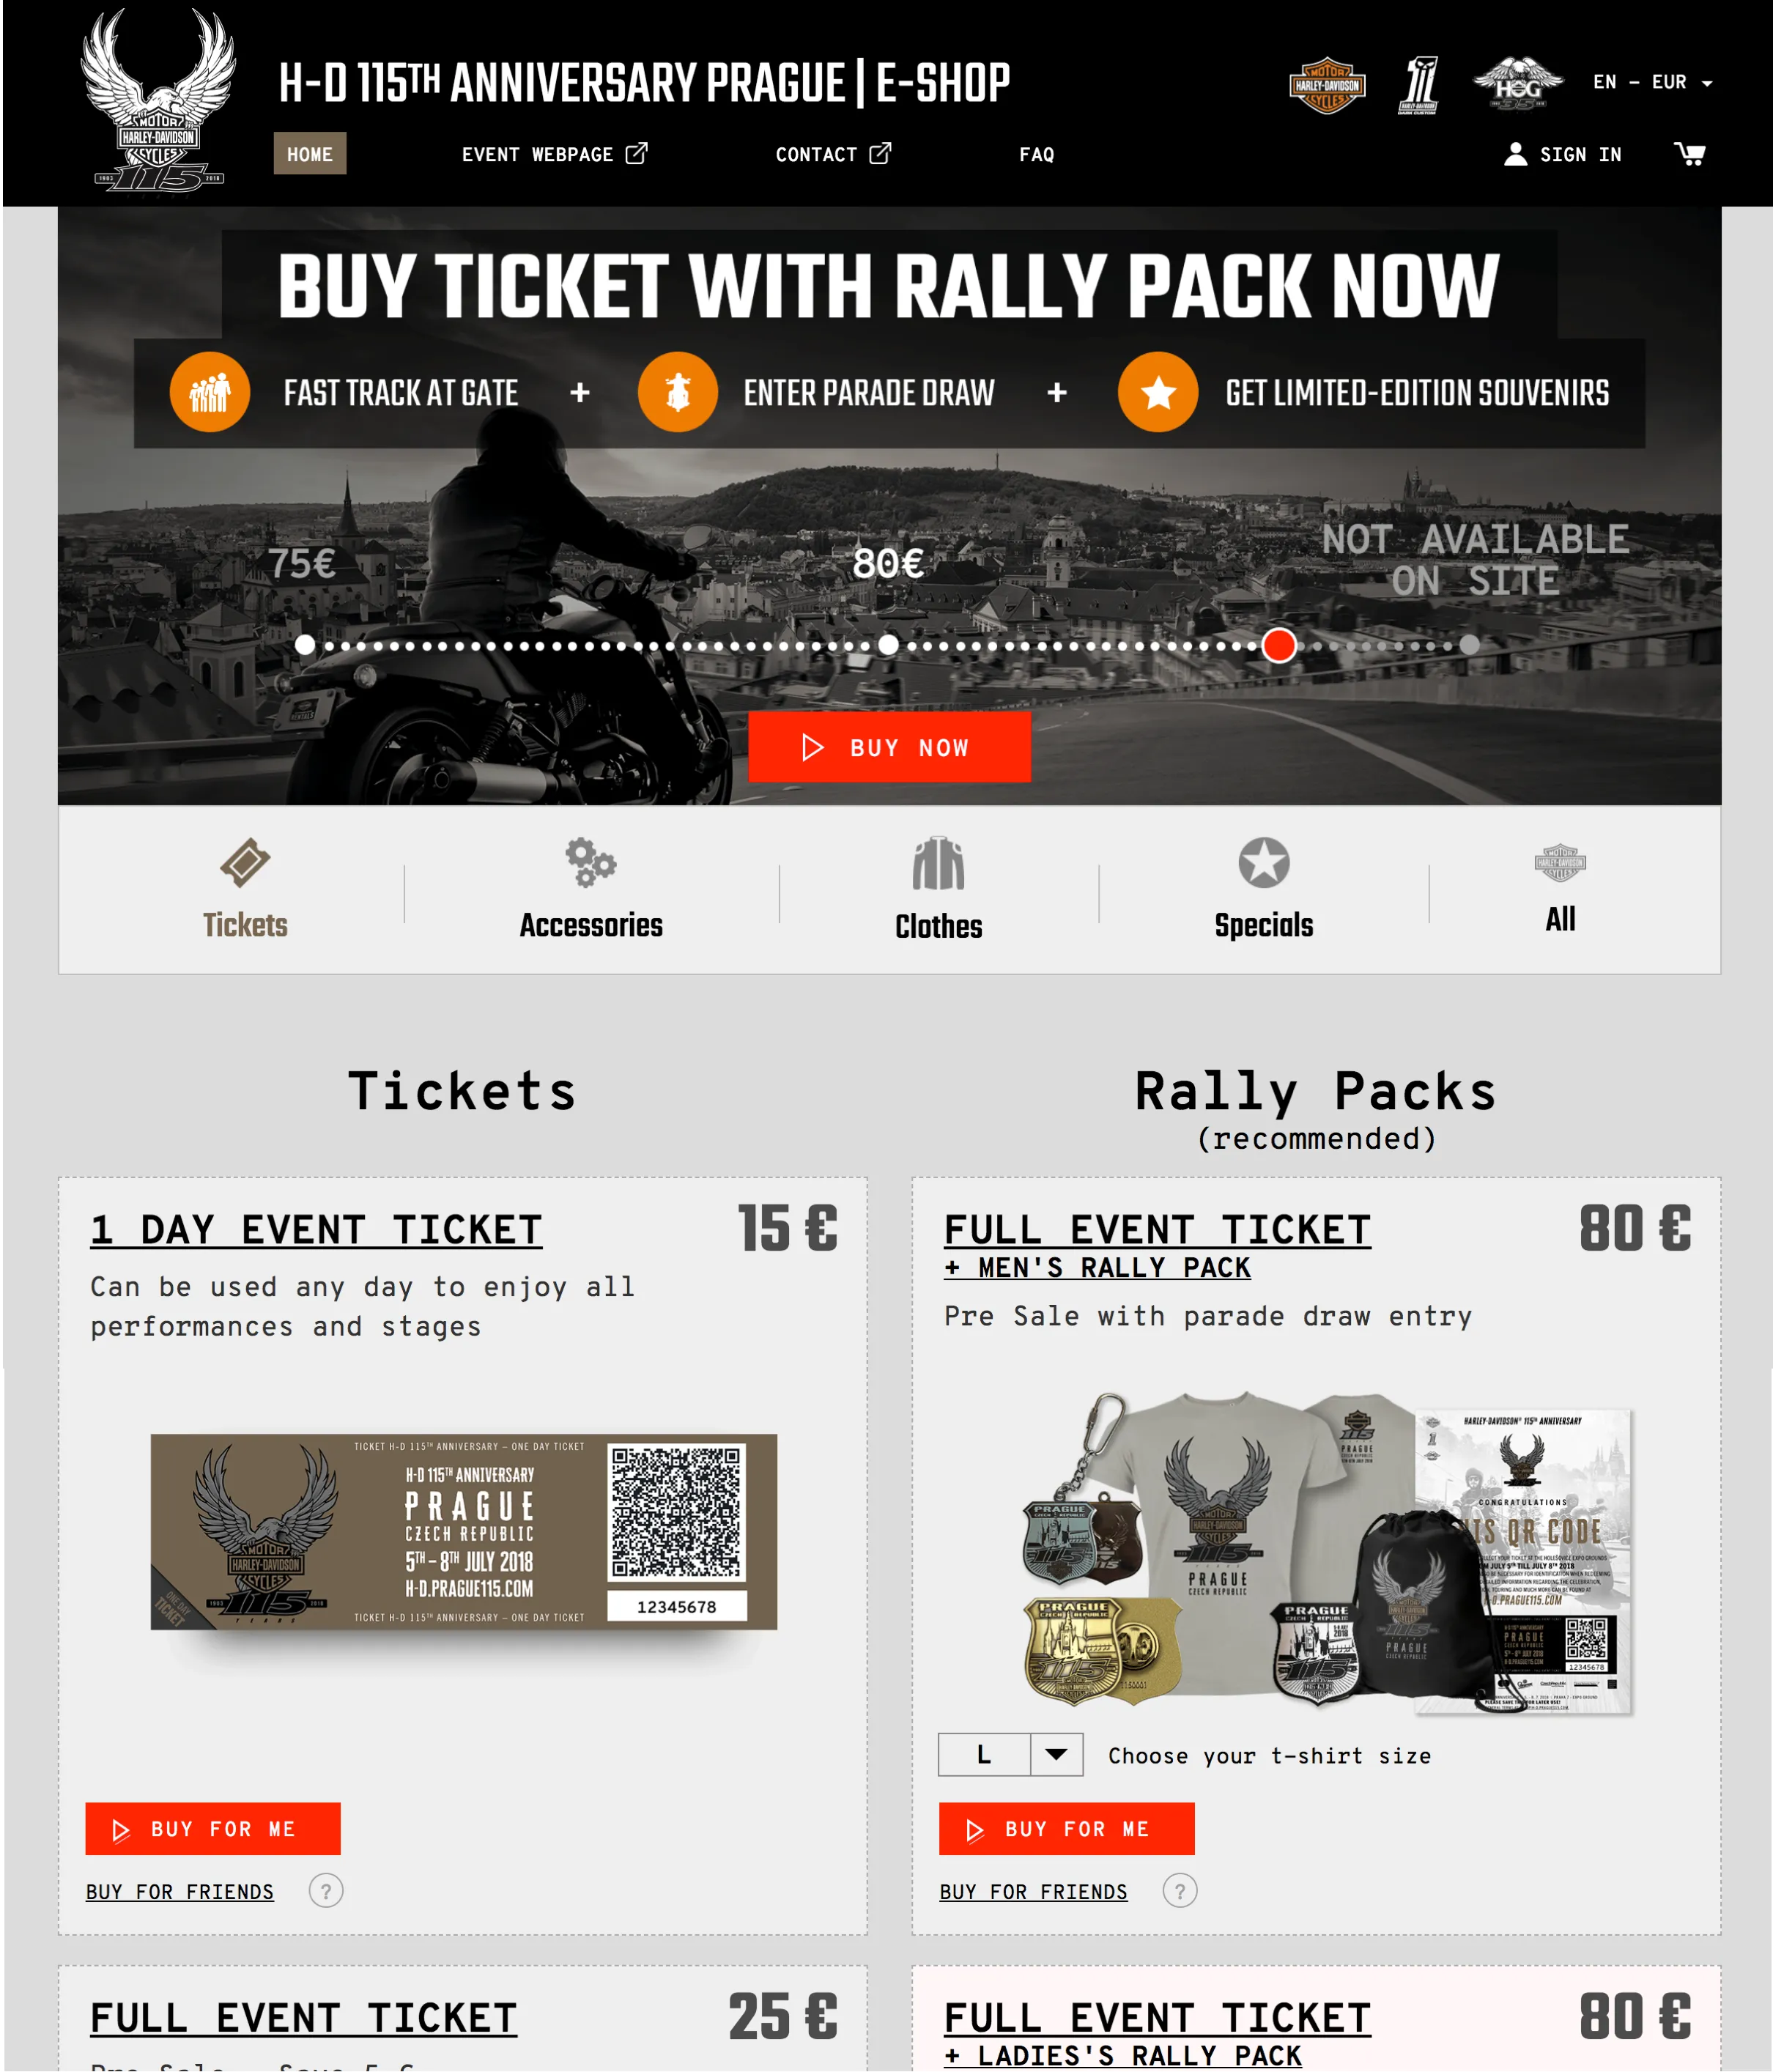 Vývoj webové aplikace pro 115. Výročí Harley-Davidson v Praze